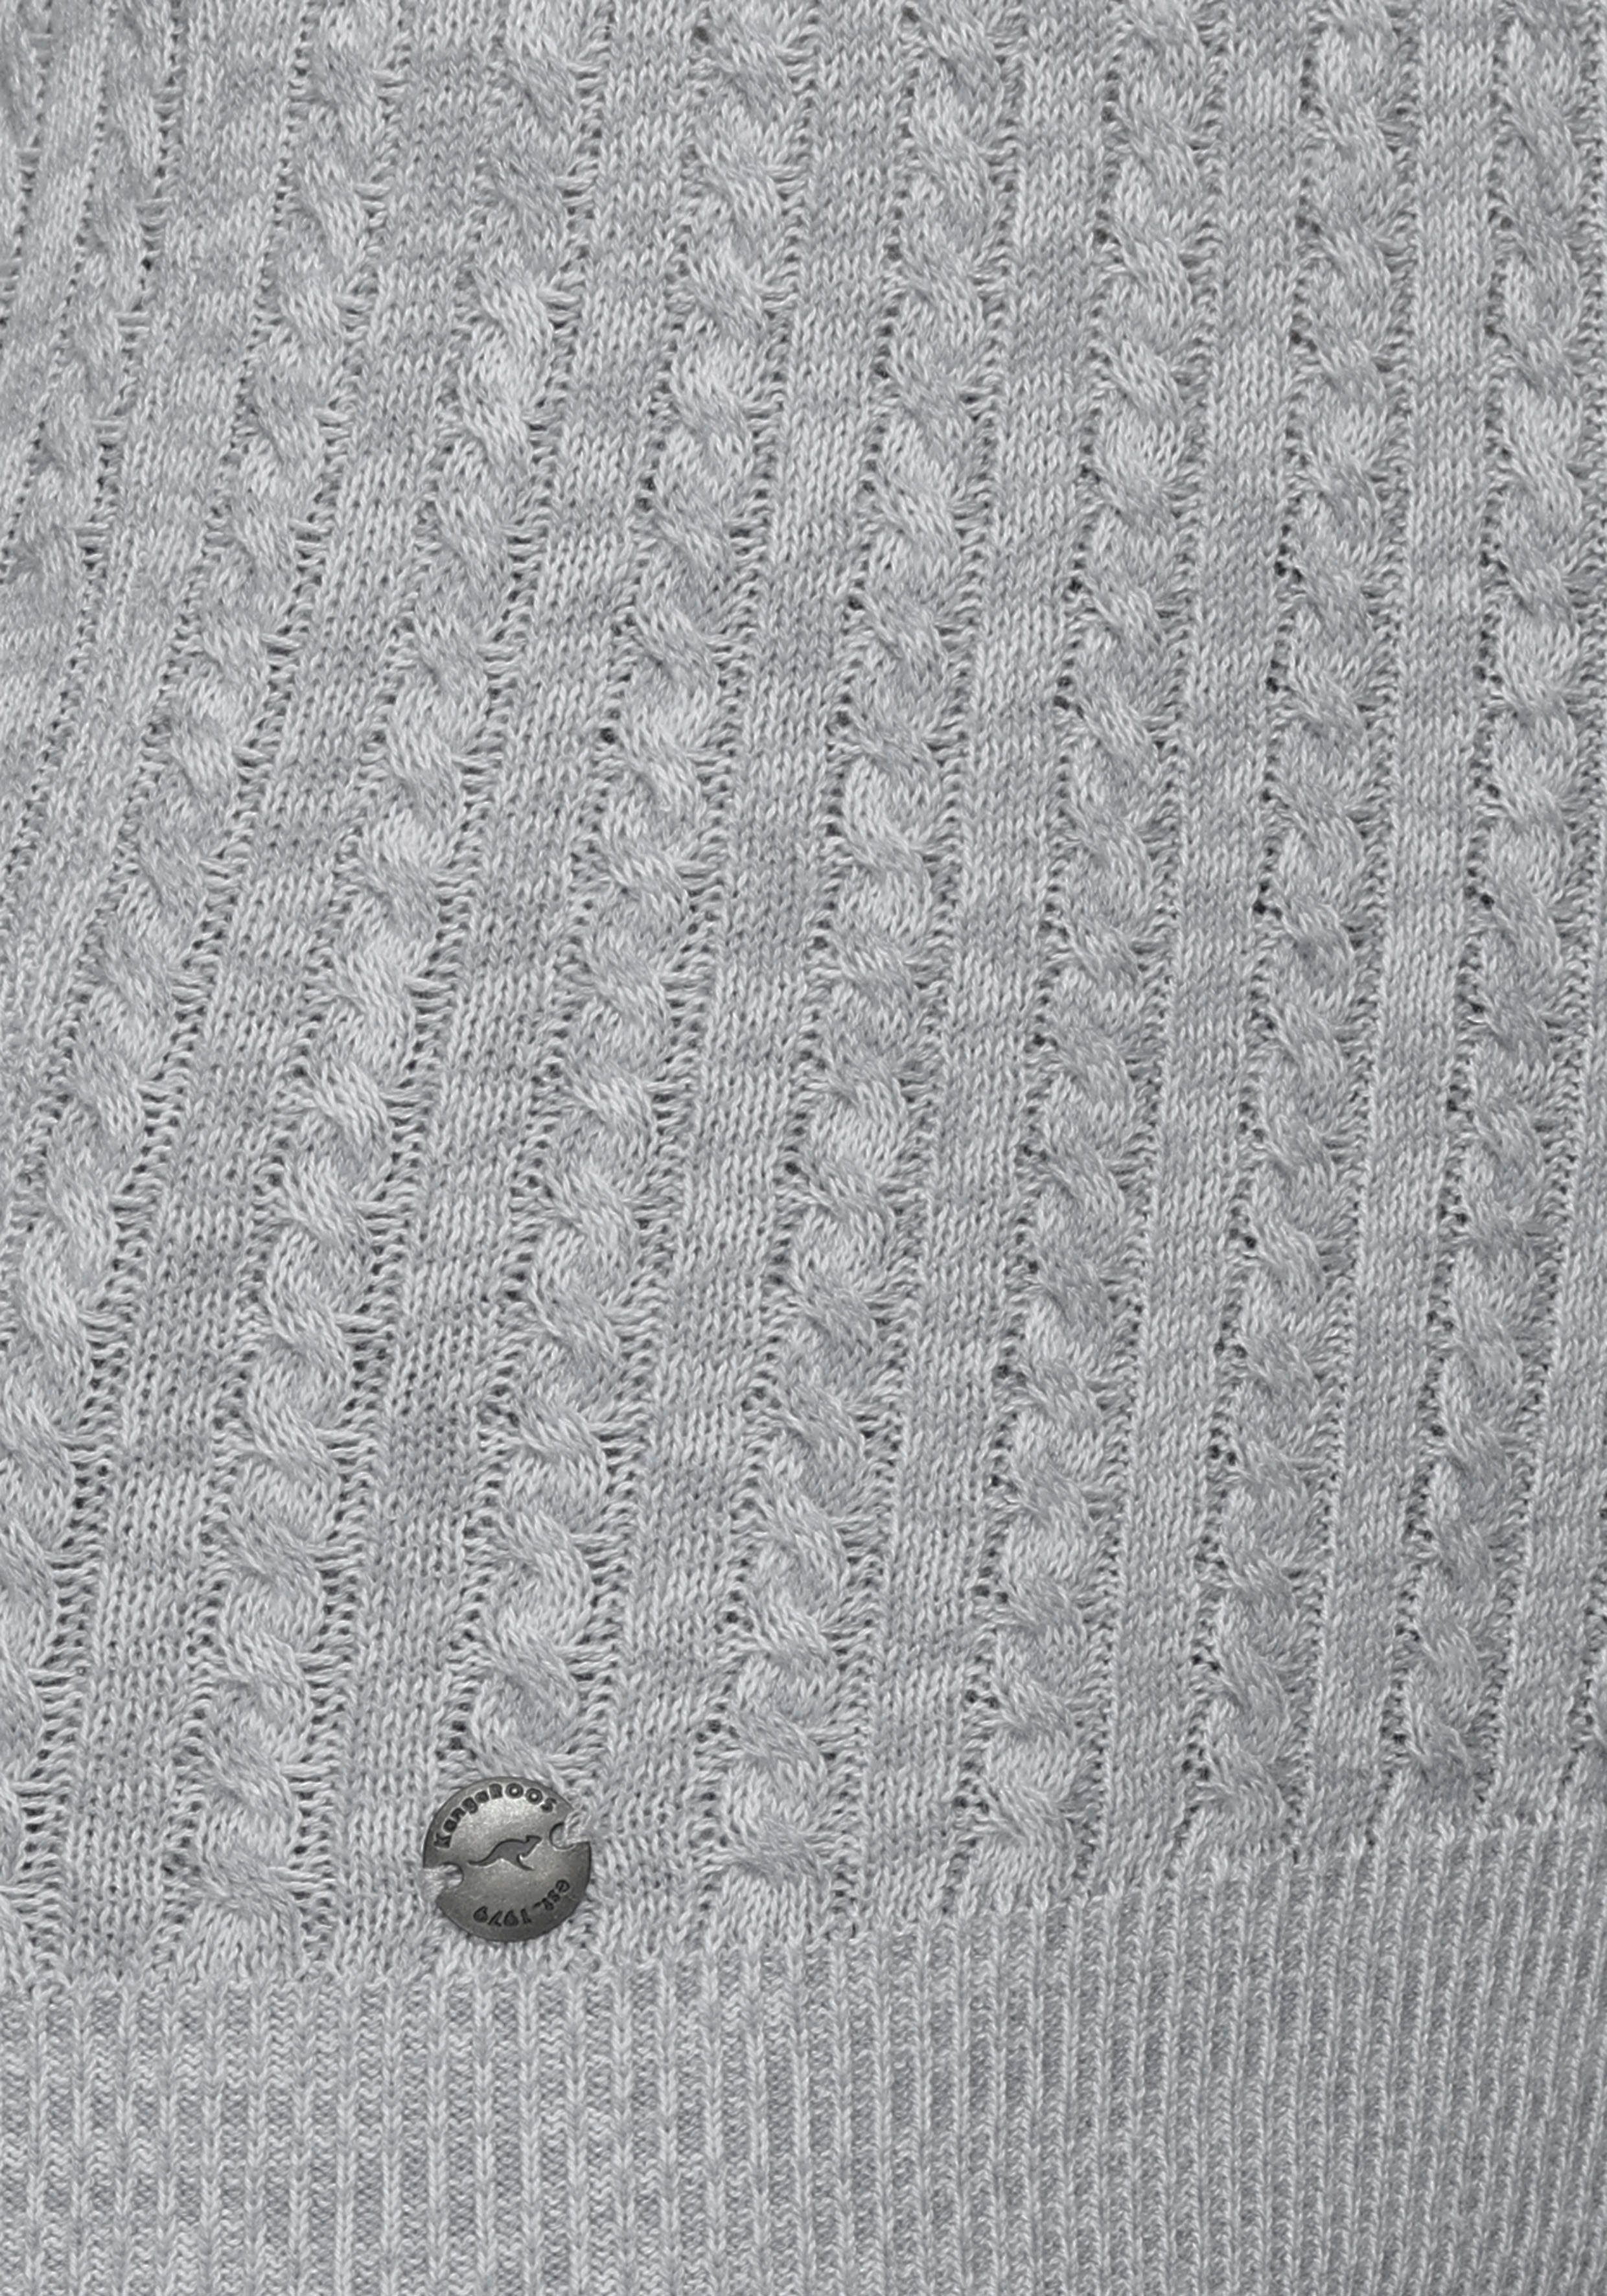 im feinen KangaROOS grau-wollweiß-melange Zopf-Strick-Design Kapuzenpullover